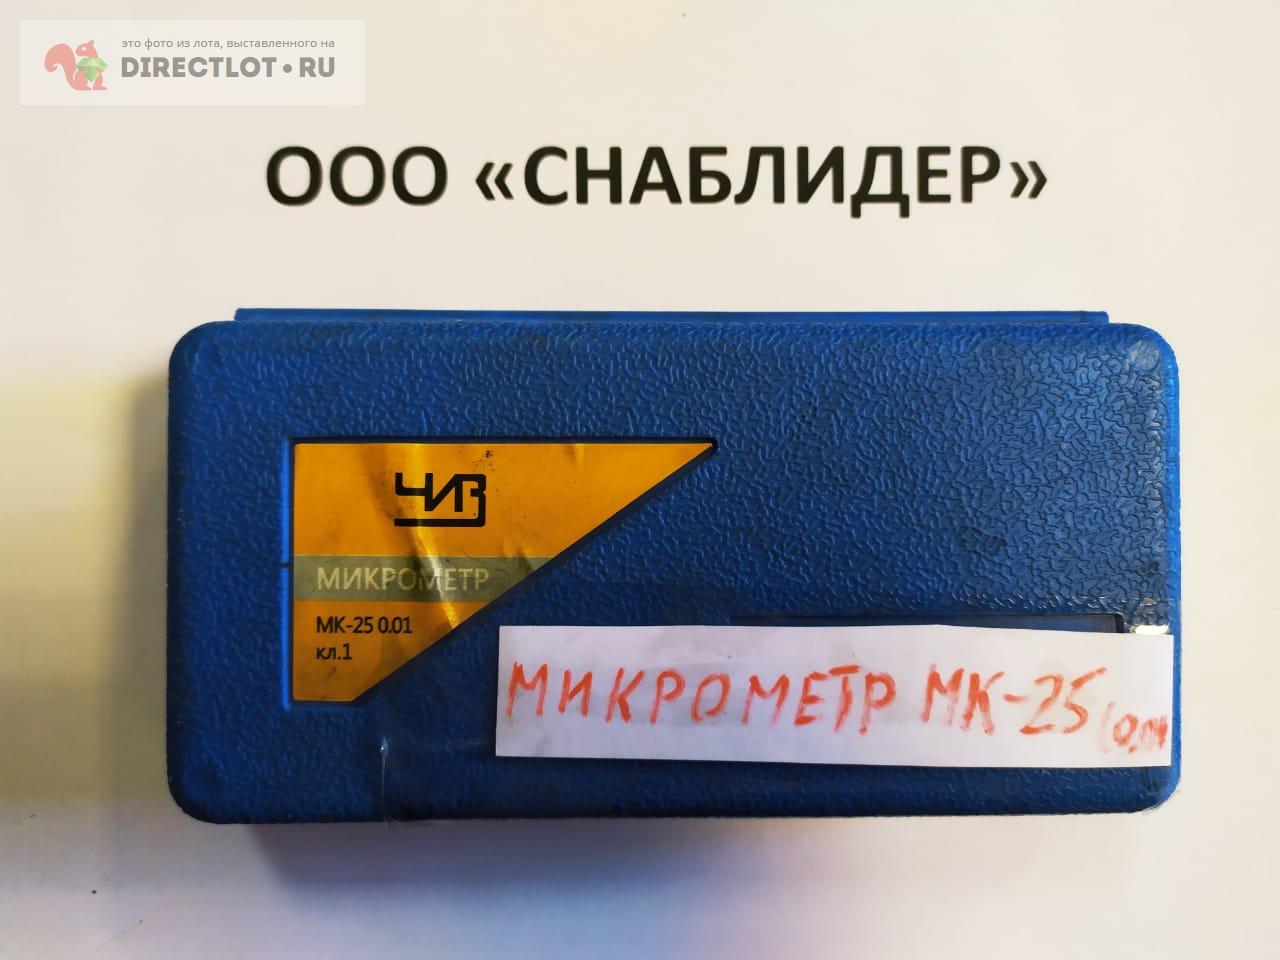 Микрометр МК-25 0,01 кл.1  в Уфе цена 700 Р на DIRECTLOT.RU .